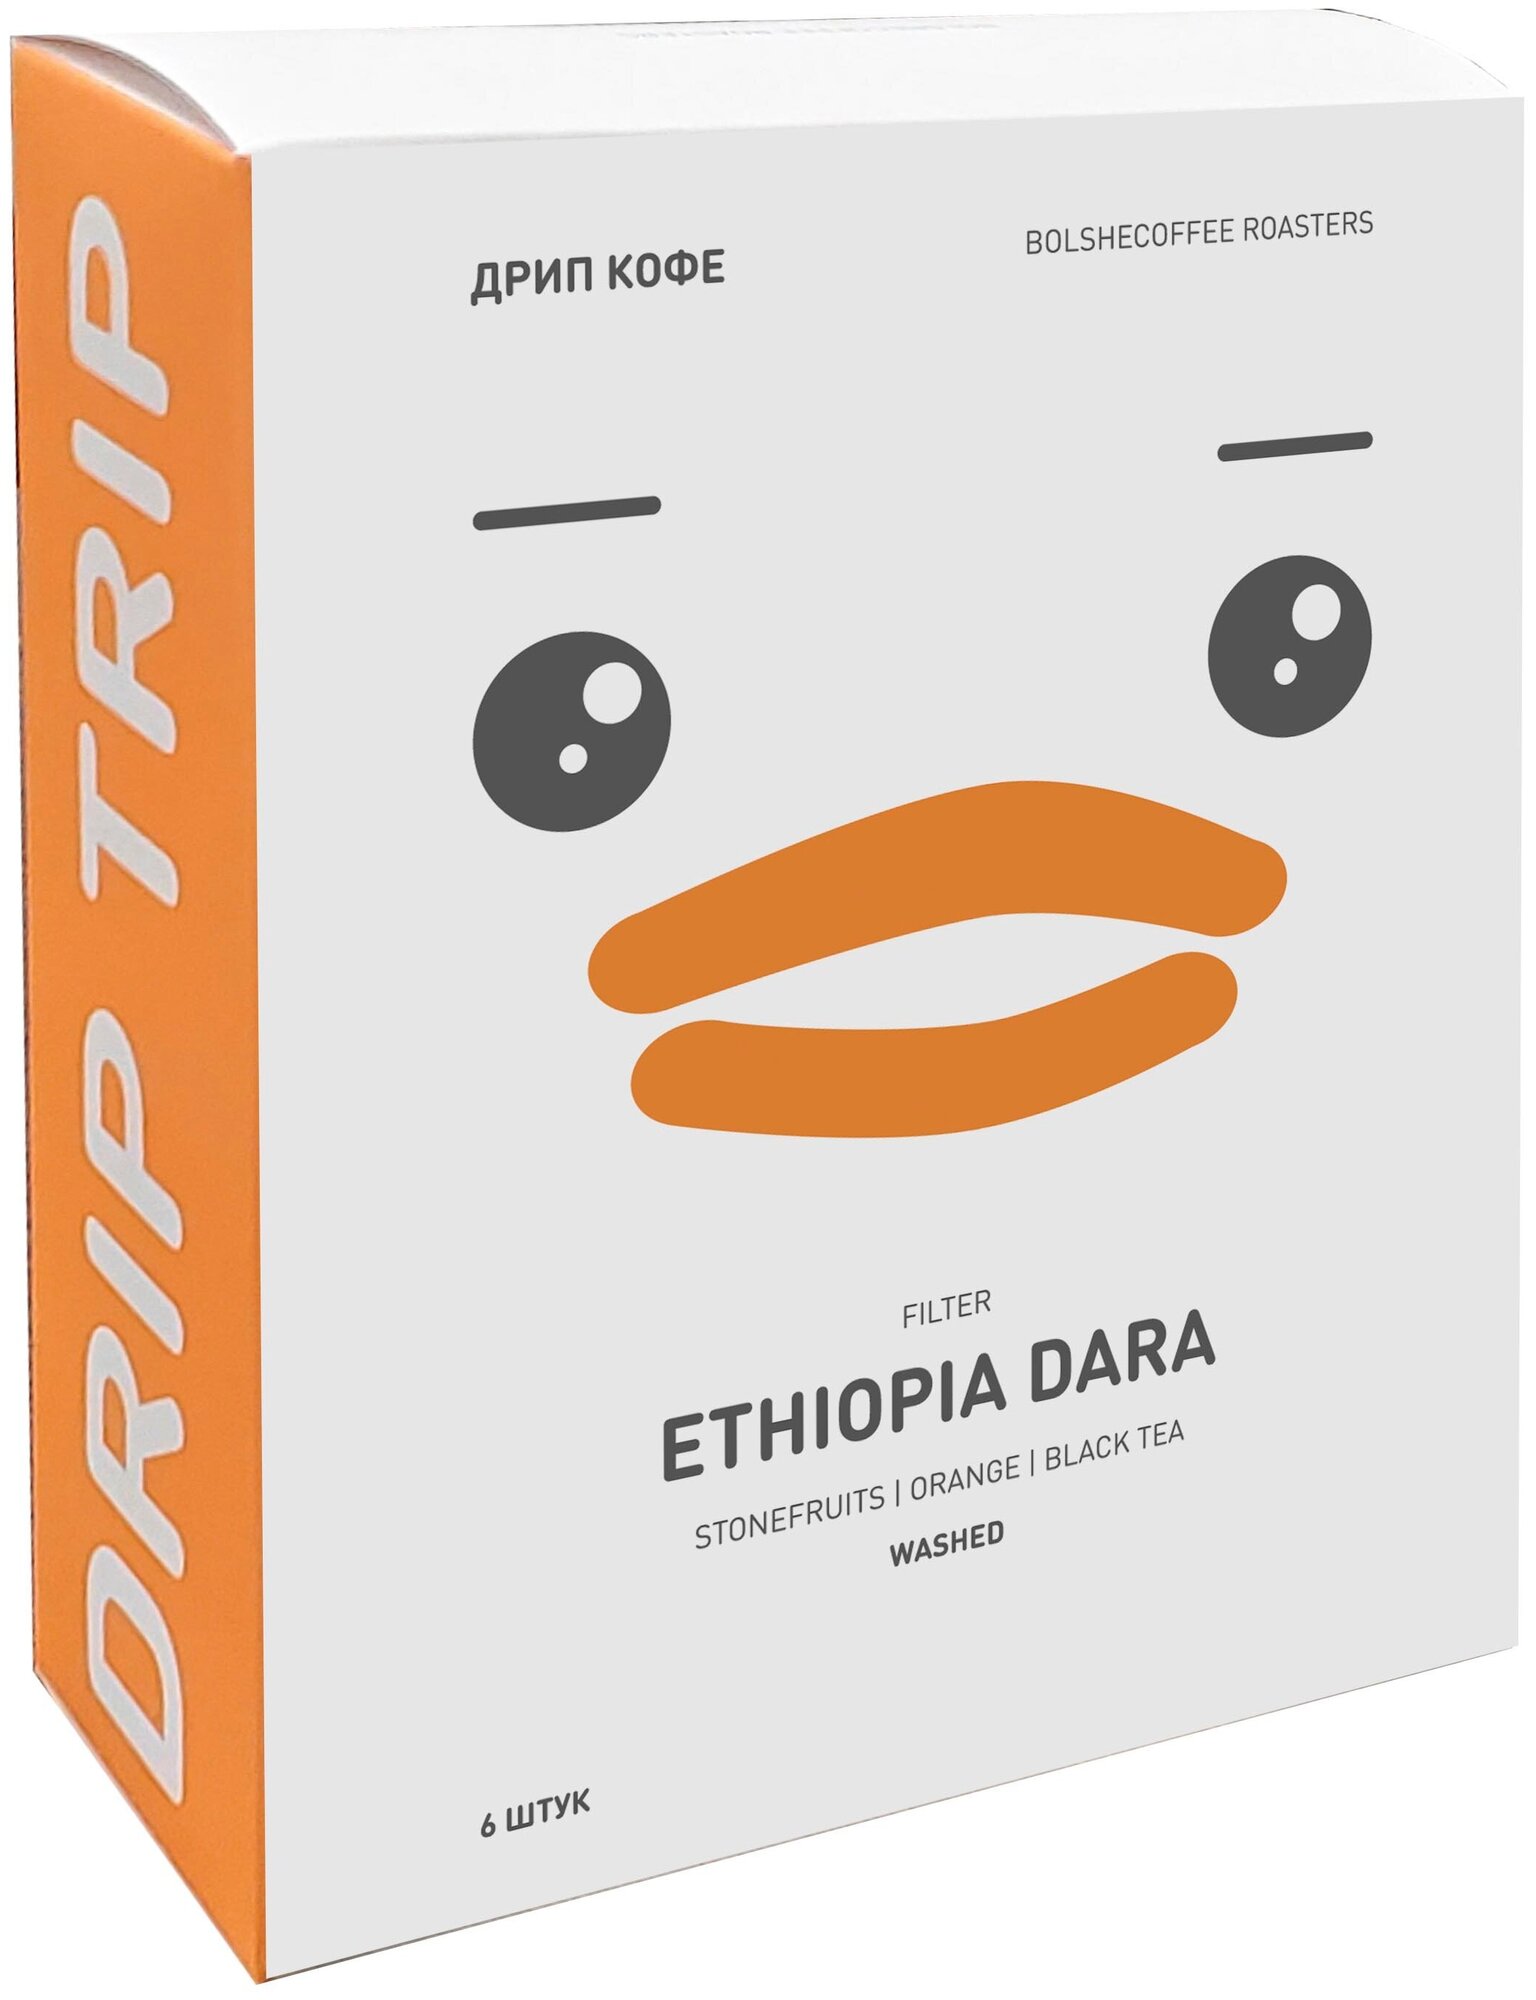 Кофе молотый в дрип-пакетах BOLSHECOFFEE ROASTERS, Эфиопия Дара, 6 шт/кор.